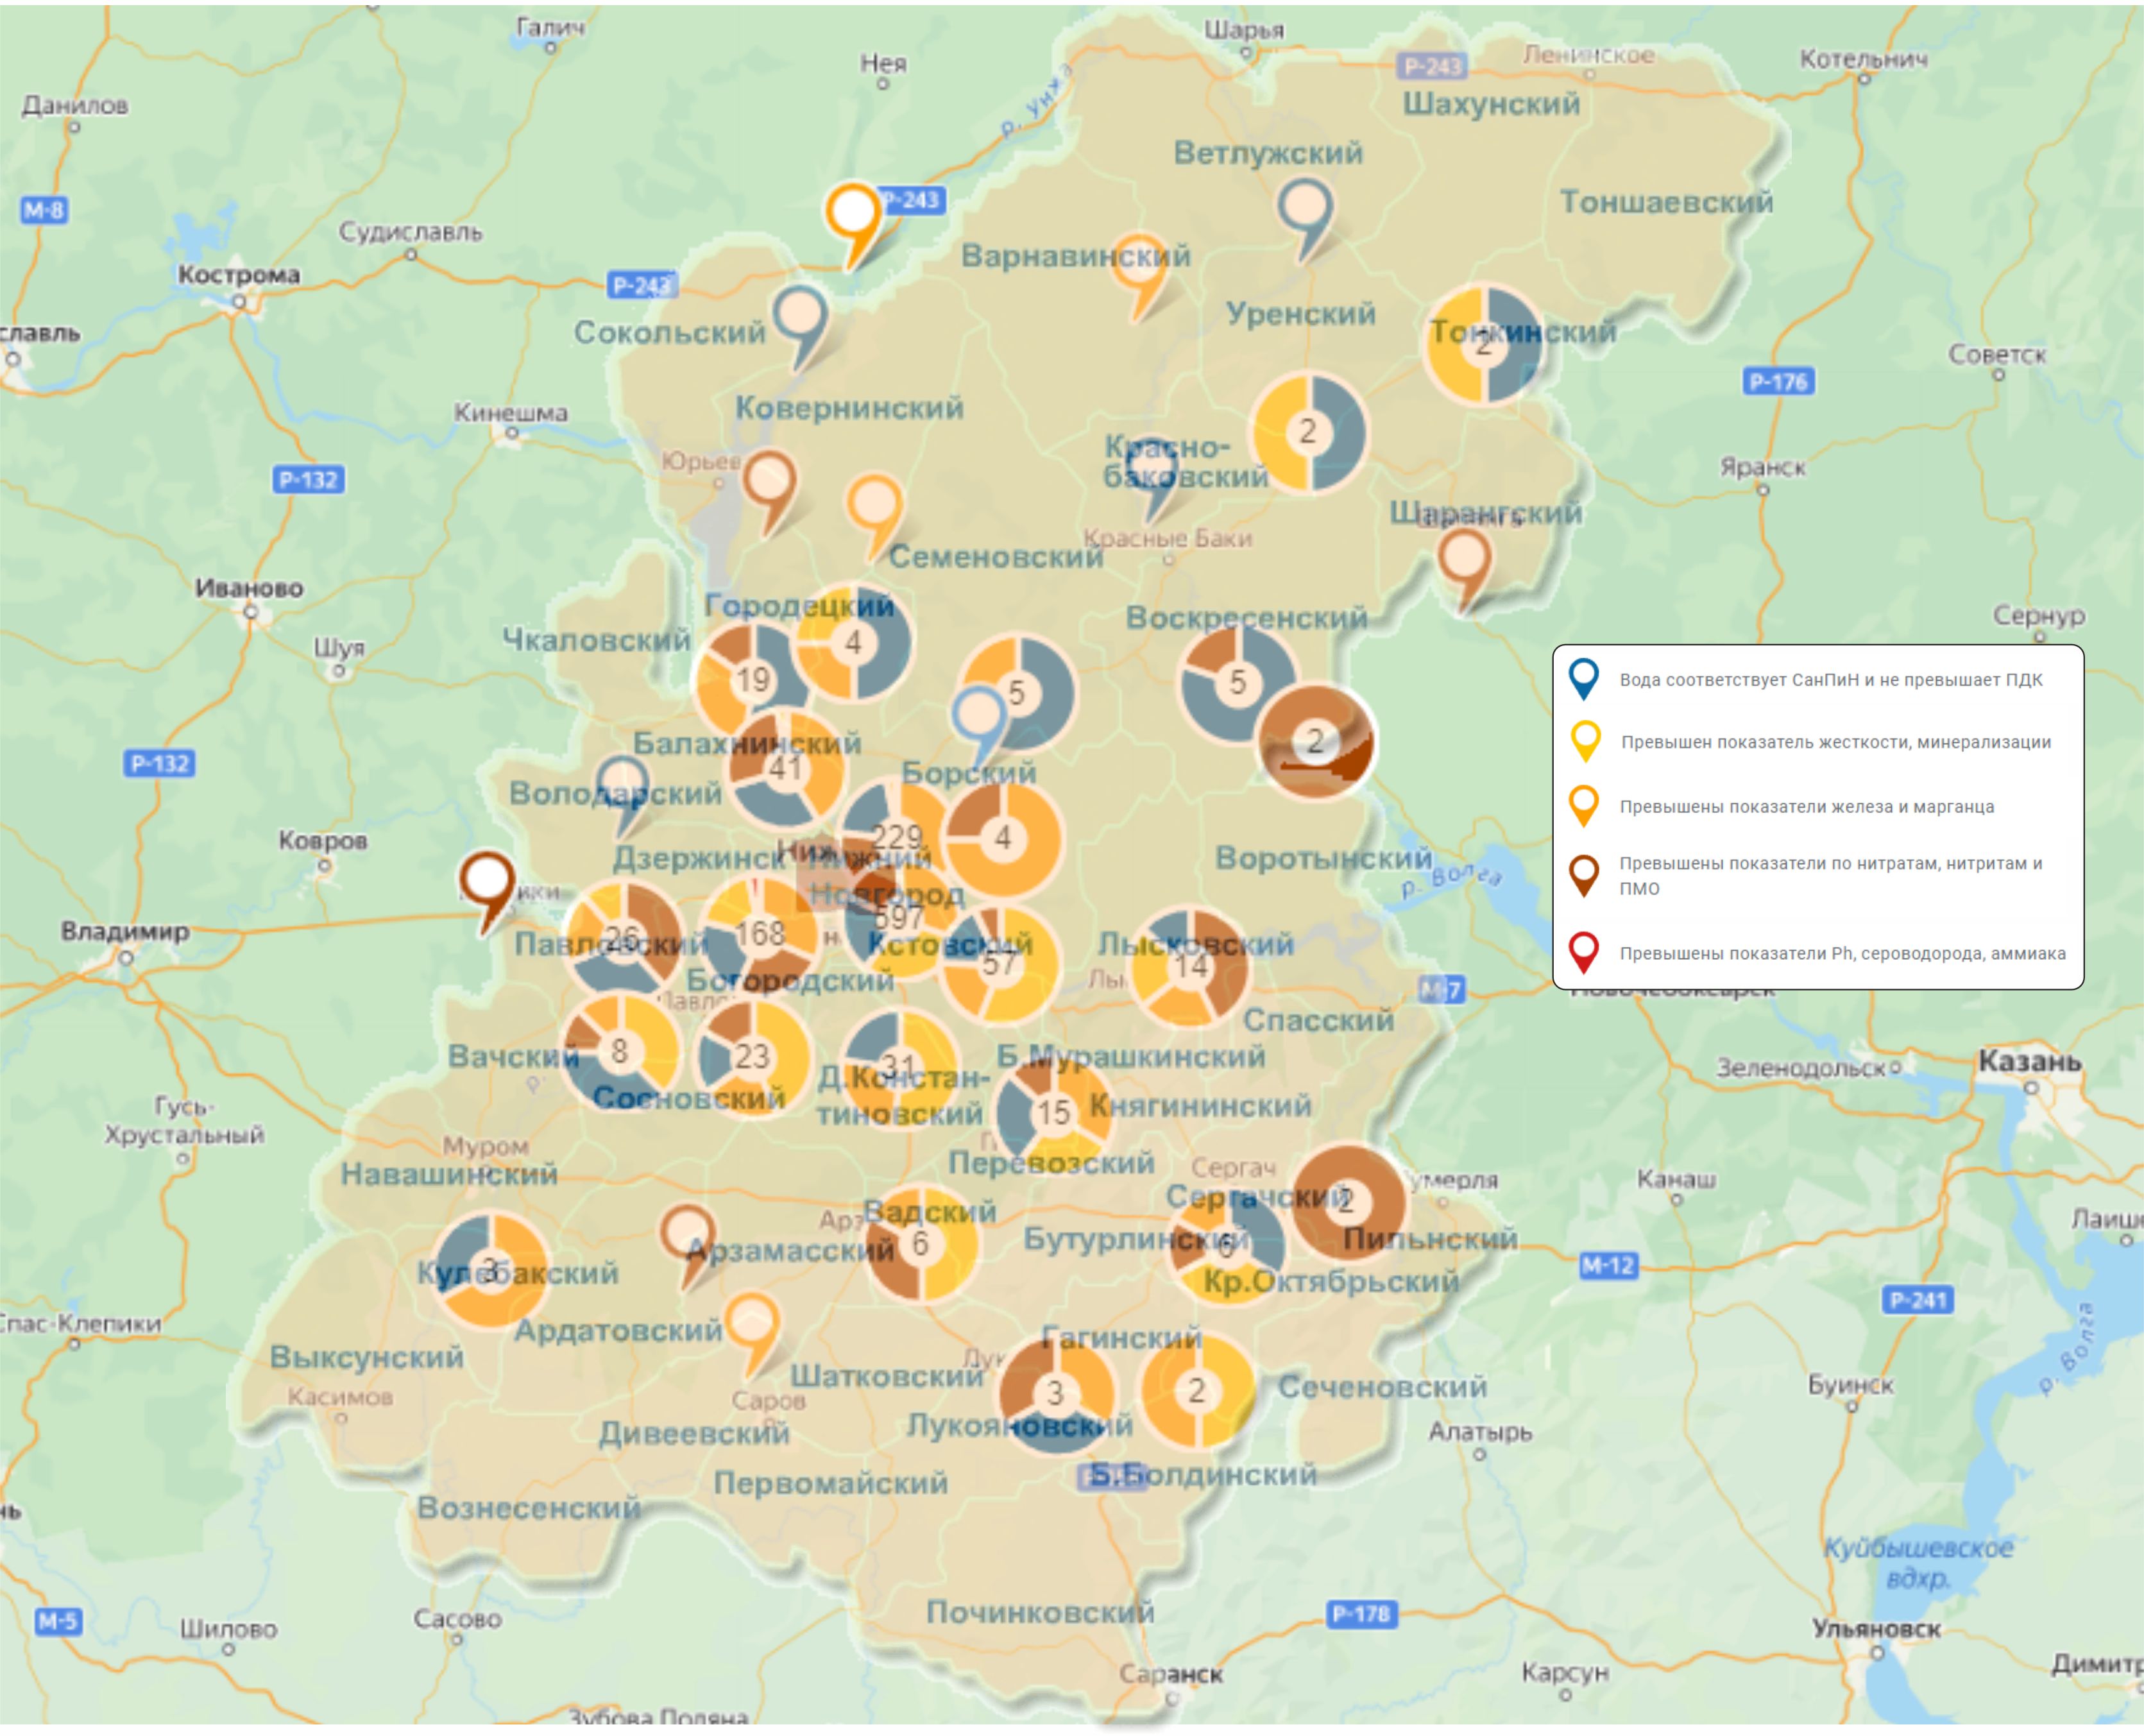 Карта анализов воды по Нижегородской области